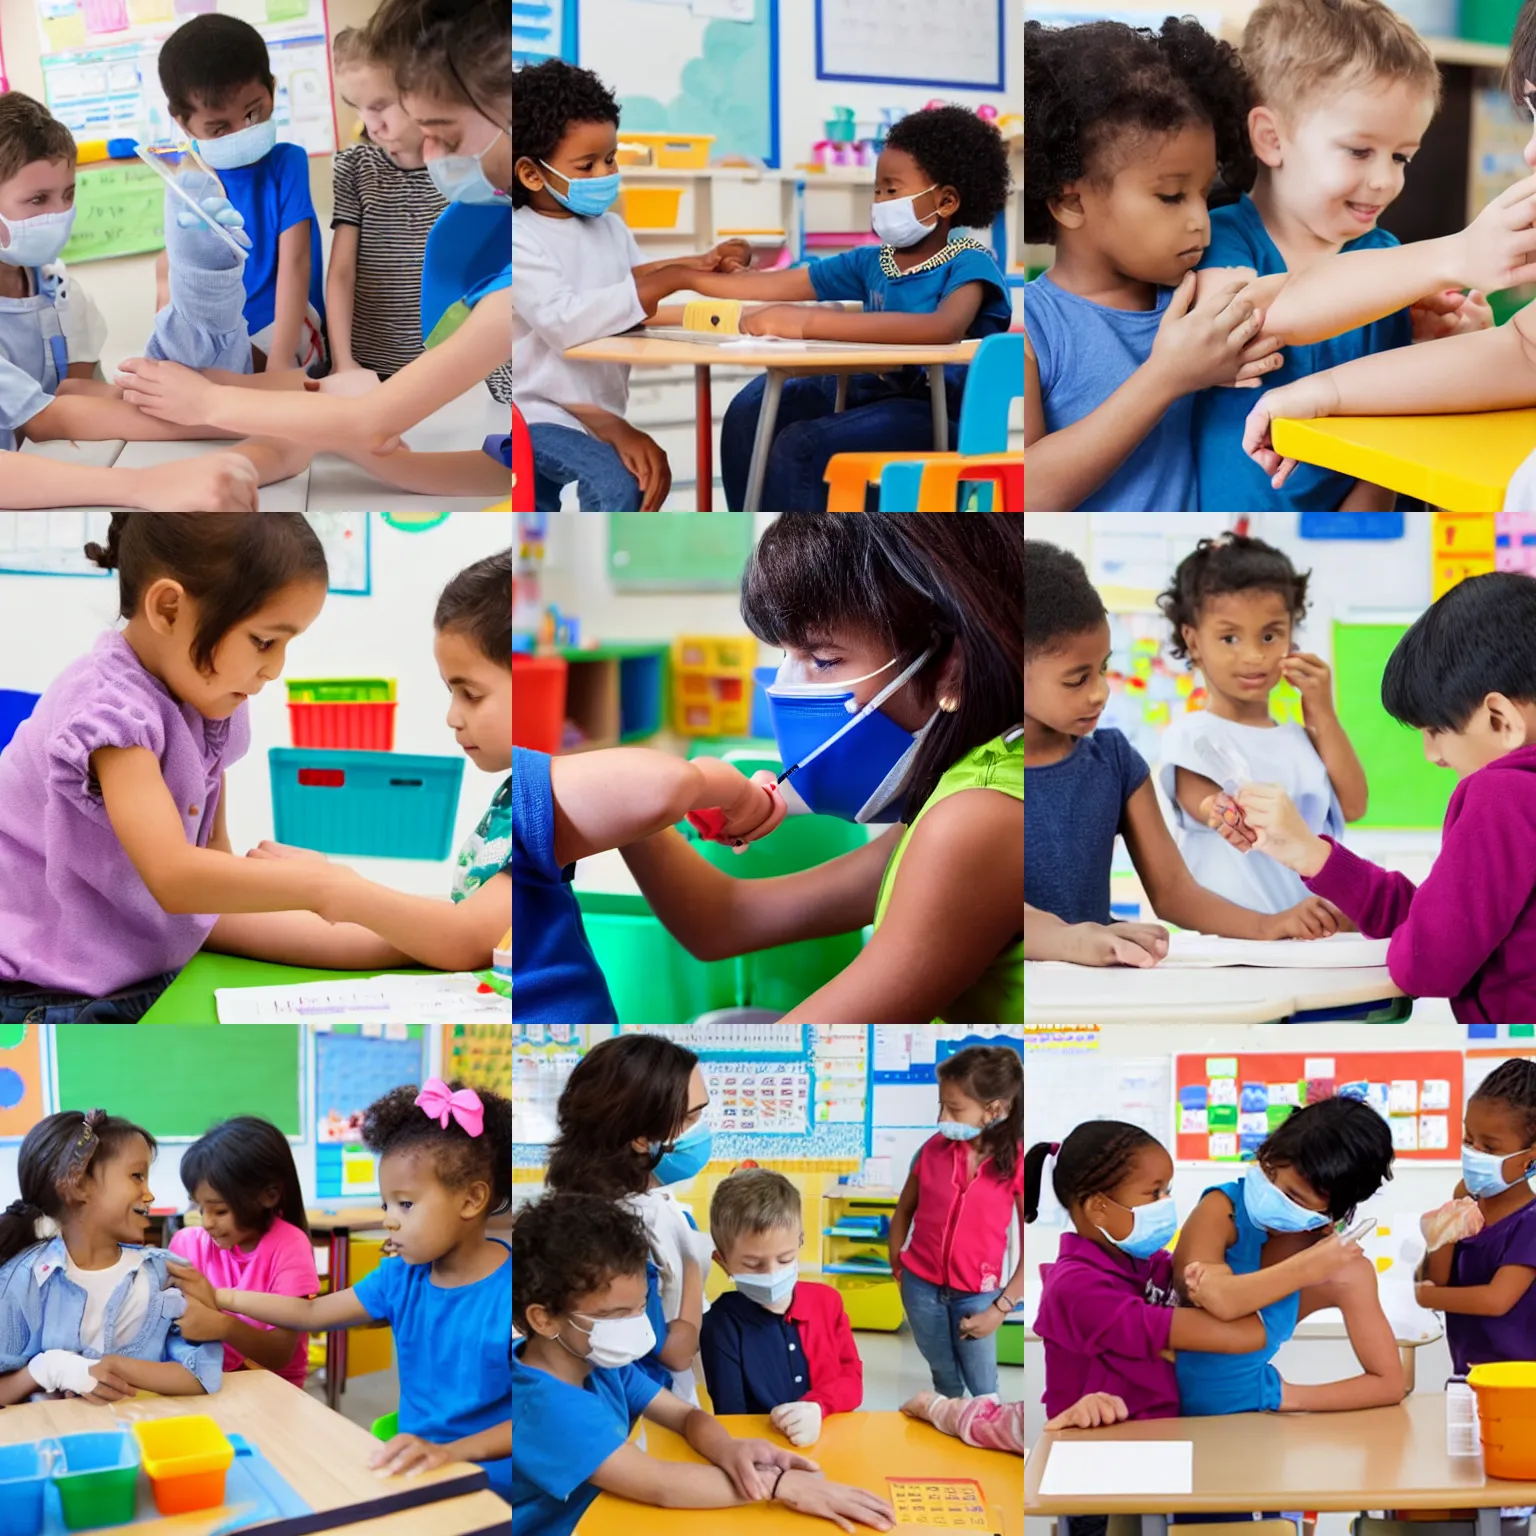 Prompt: children vaccinating each other in kindergarten